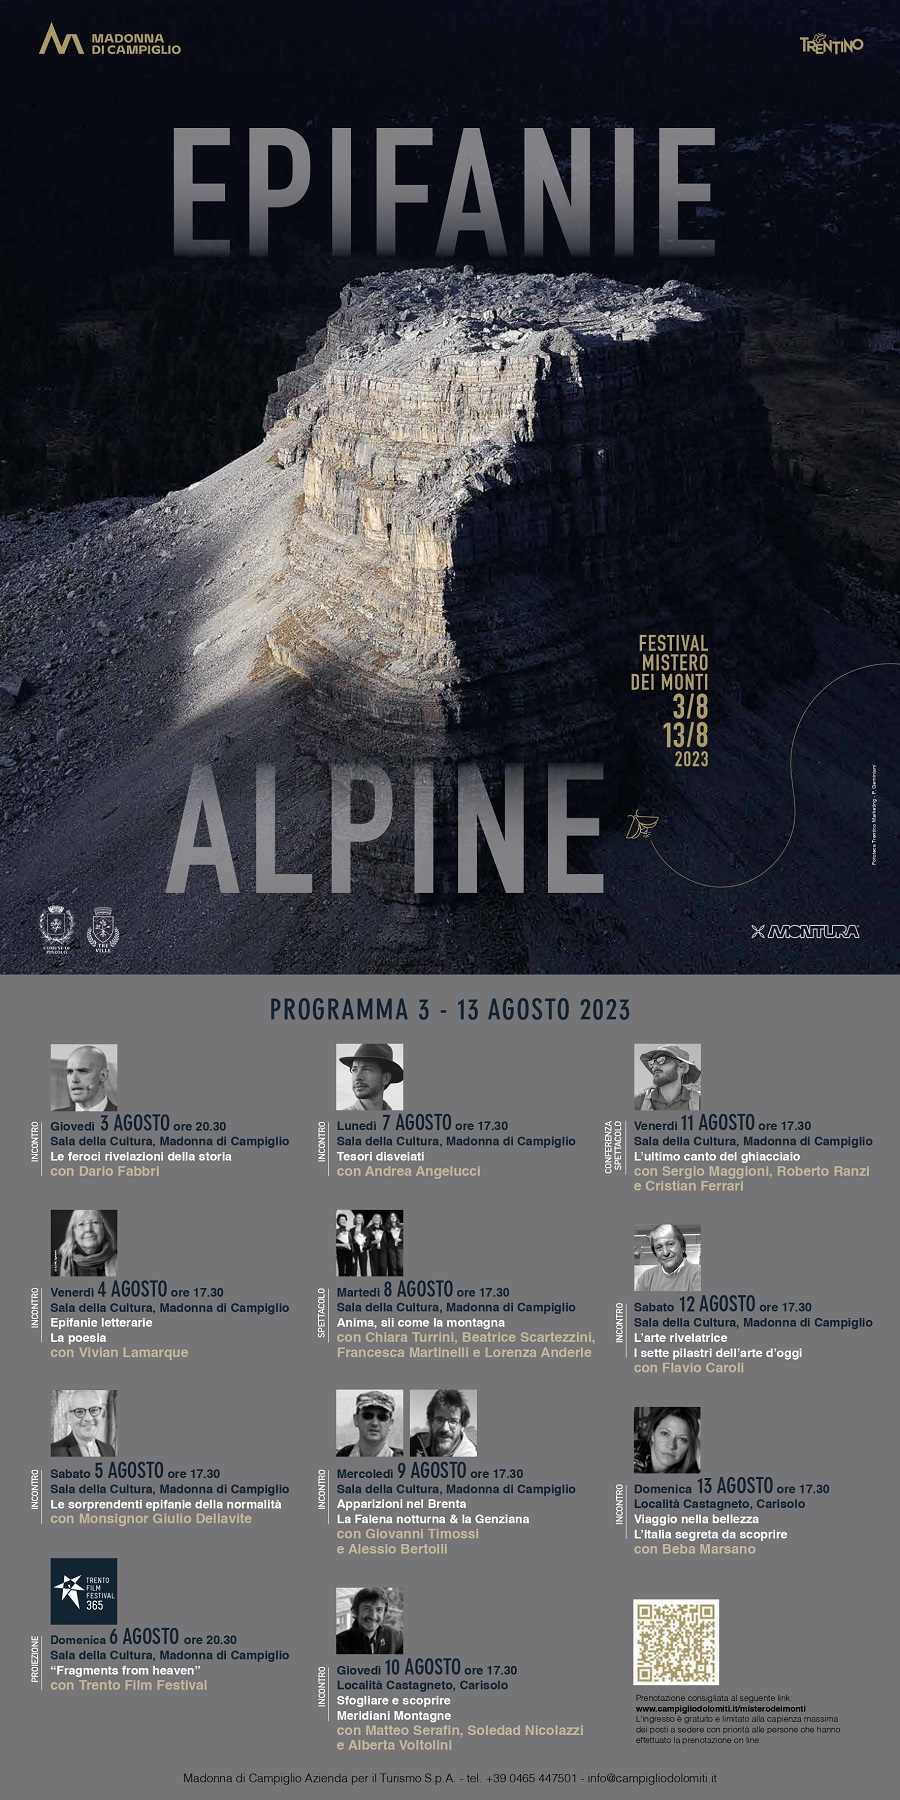 Festival Mistero dei Monti “Epifanie Alpine” 3-13 agosto 2023